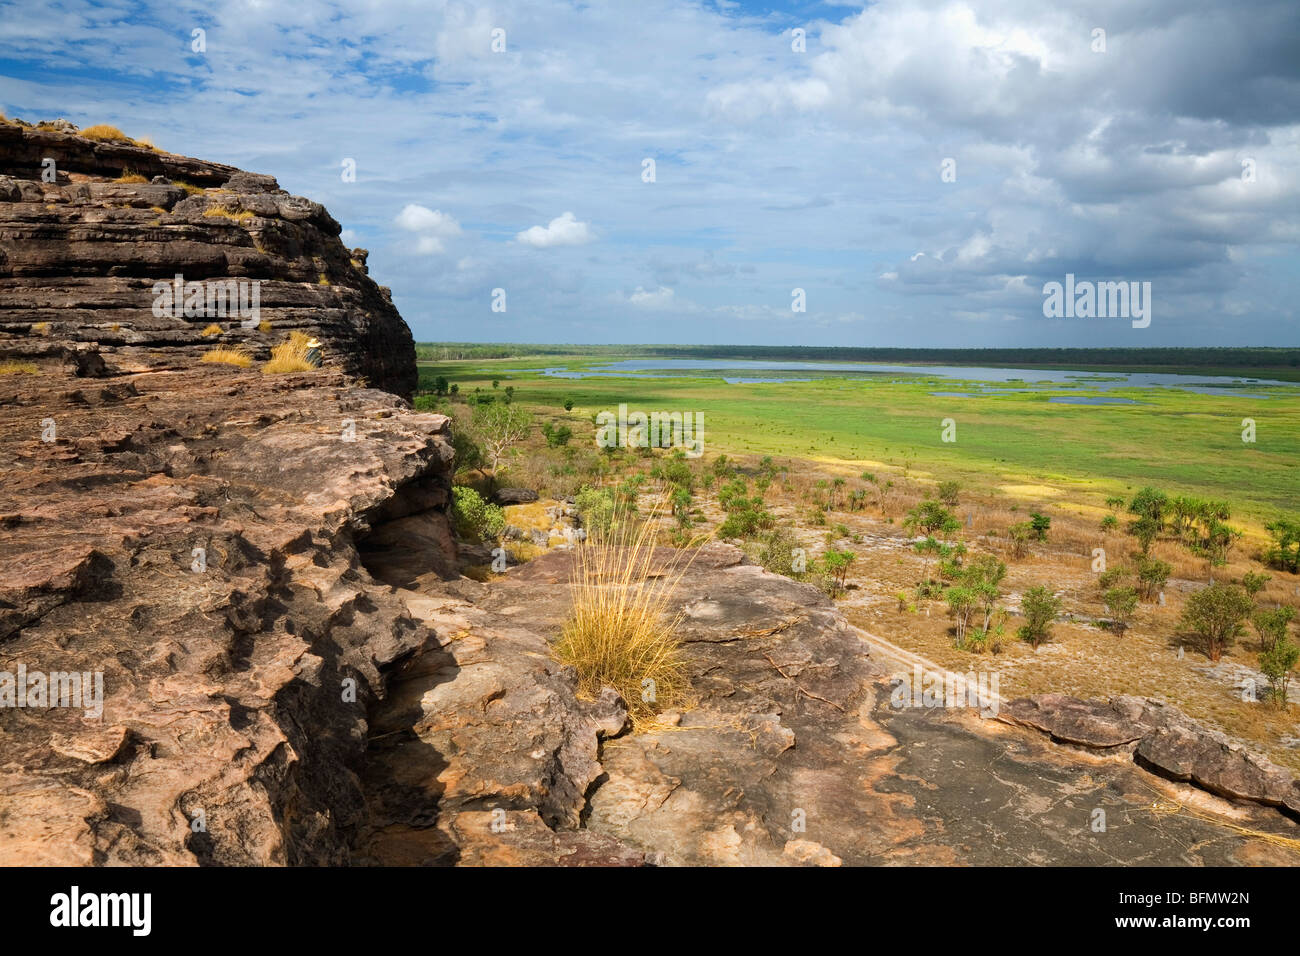 L'Australie, Territoire du Nord, le Parc National de Kakadu. Vue sur la plaine de l'Aboriginal Nadab site d'Ubirr. (PR) Banque D'Images